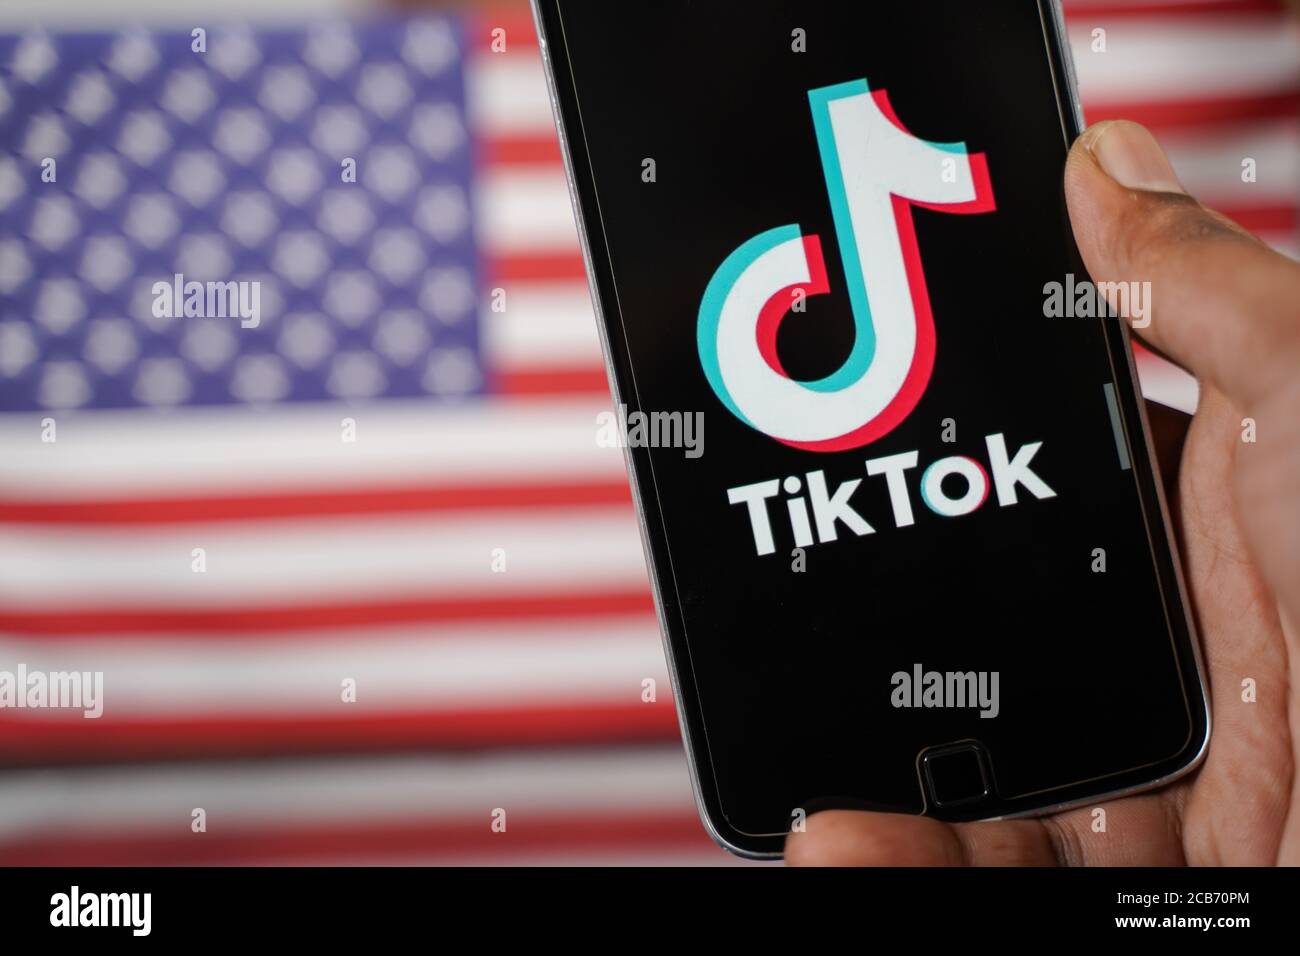 Maski, Indien - 4. August, 2020 : Nahaufnahme der Hände mit der tik tok App mit US- oder amerikanischer Flagge als Hintergrund und Kopierraum. Stockfoto